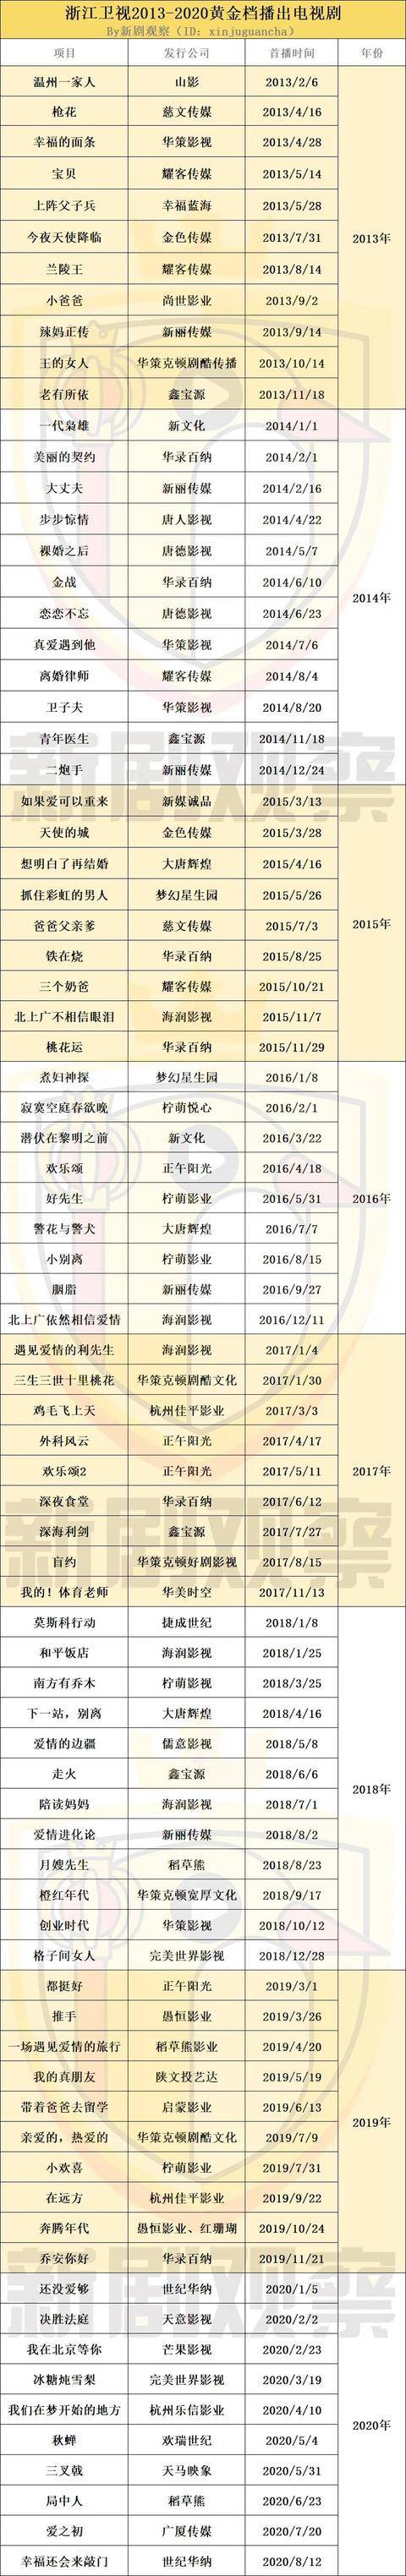 浙江卫视2013—2020年采购电视剧,海润影视,华录百纳早年供剧较多